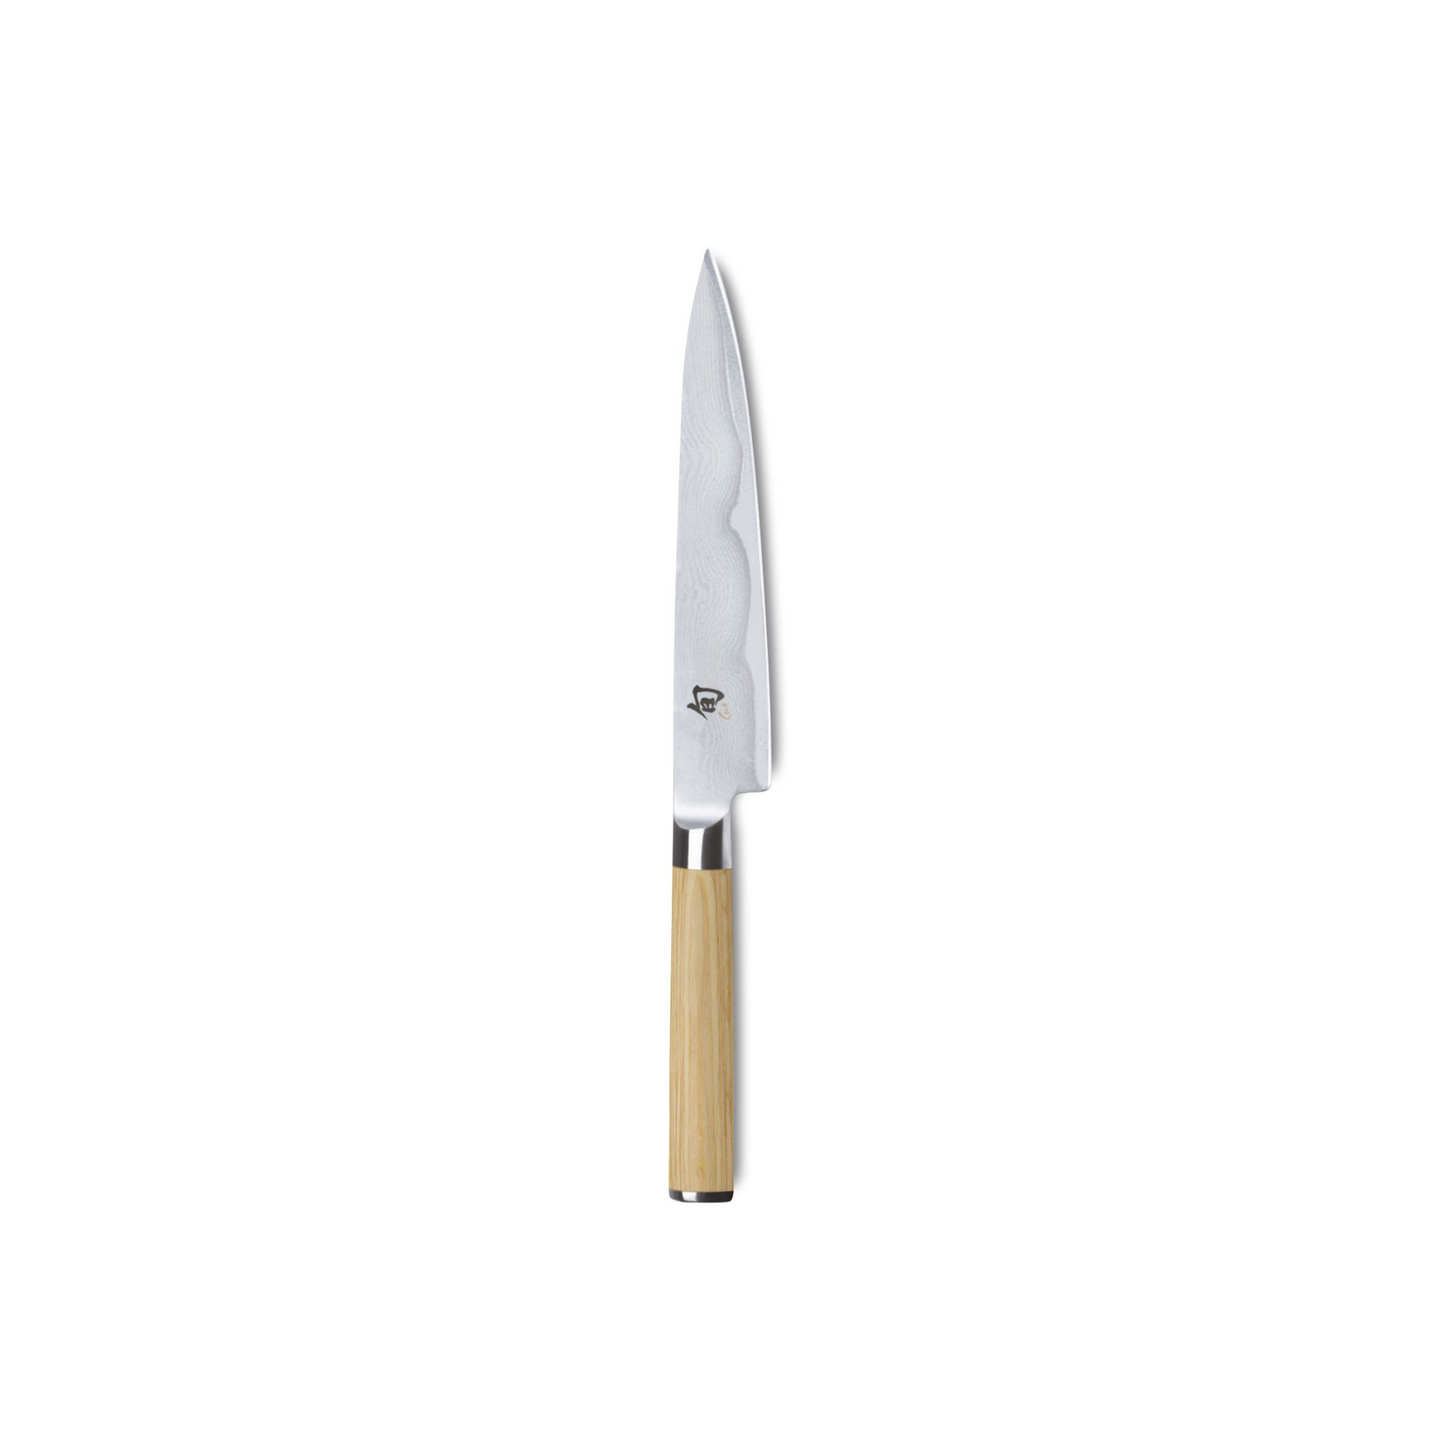 Kai Shun White Classic Utility knife 15cm